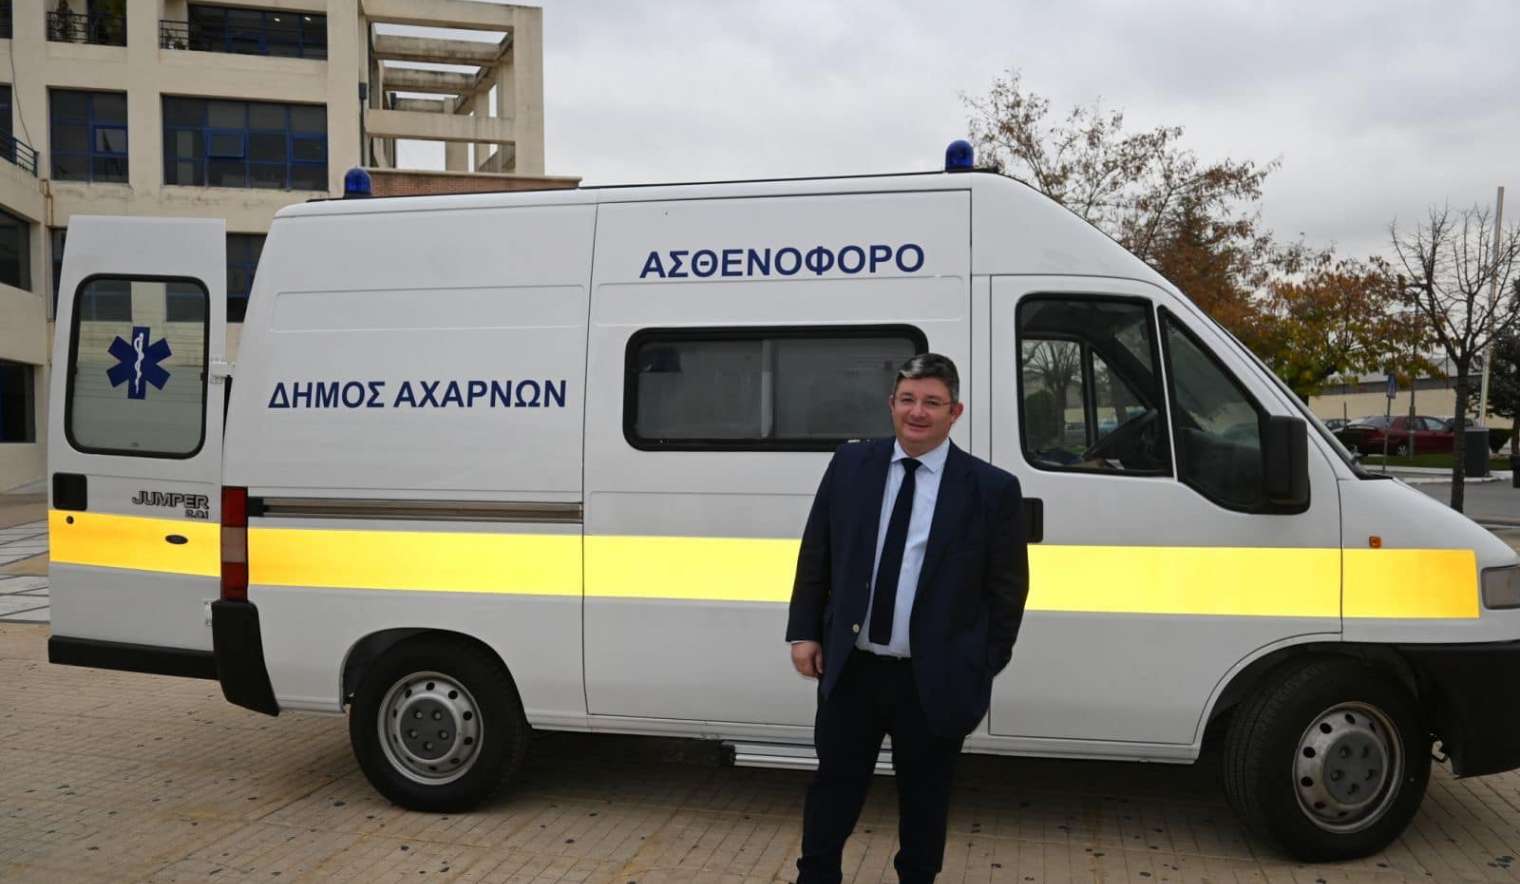 Ο Δήμος Αχαρνών απέκτησε ένα υπερσύγχρονο και πλήρως εξοπλισμένο ασθενοφόρο